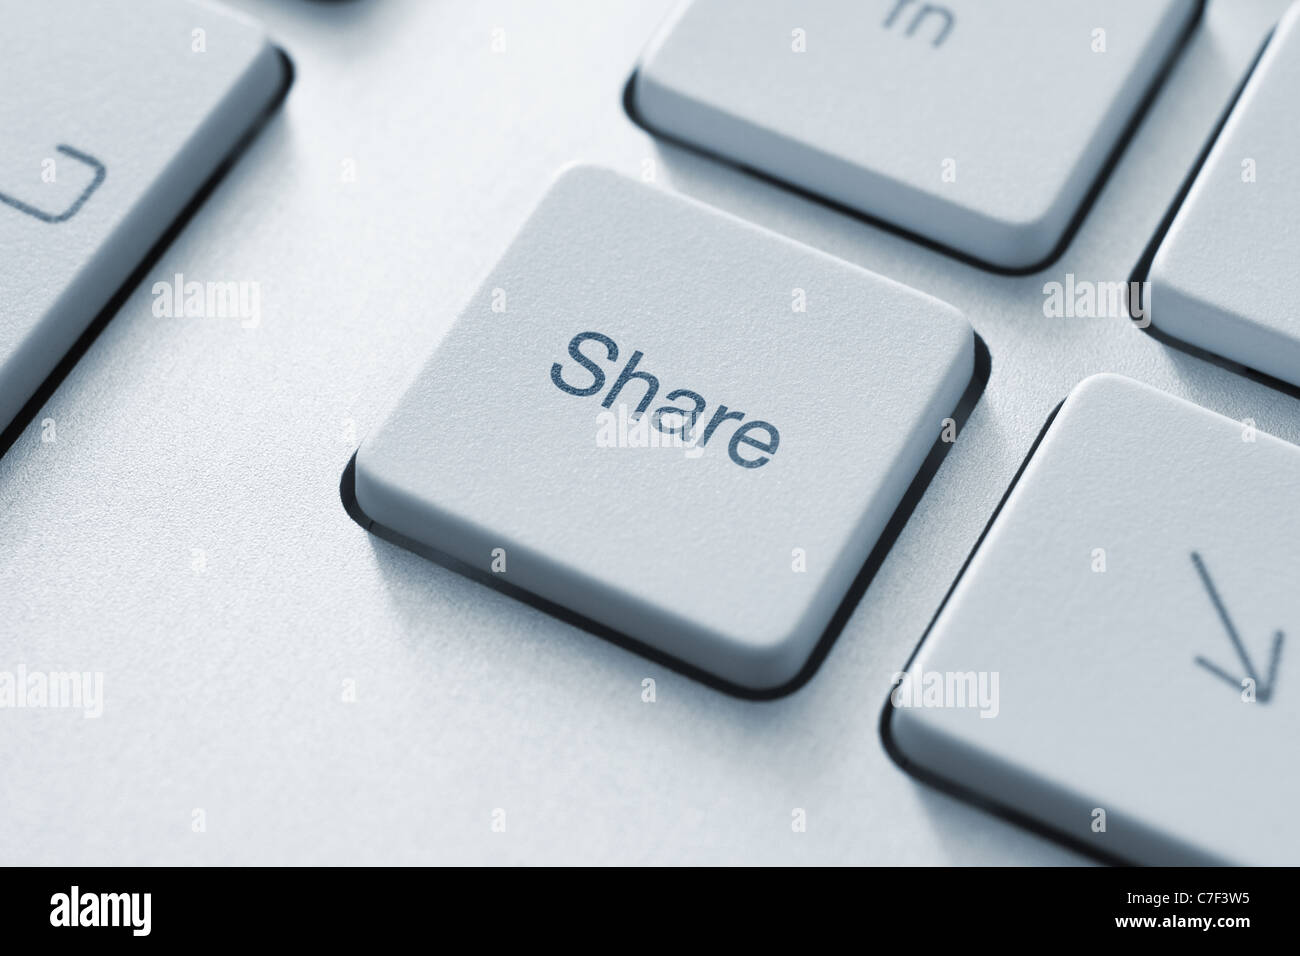 Botón Share (Compartir) en el teclado. Imagen de tonos Fotografía de stock  - Alamy